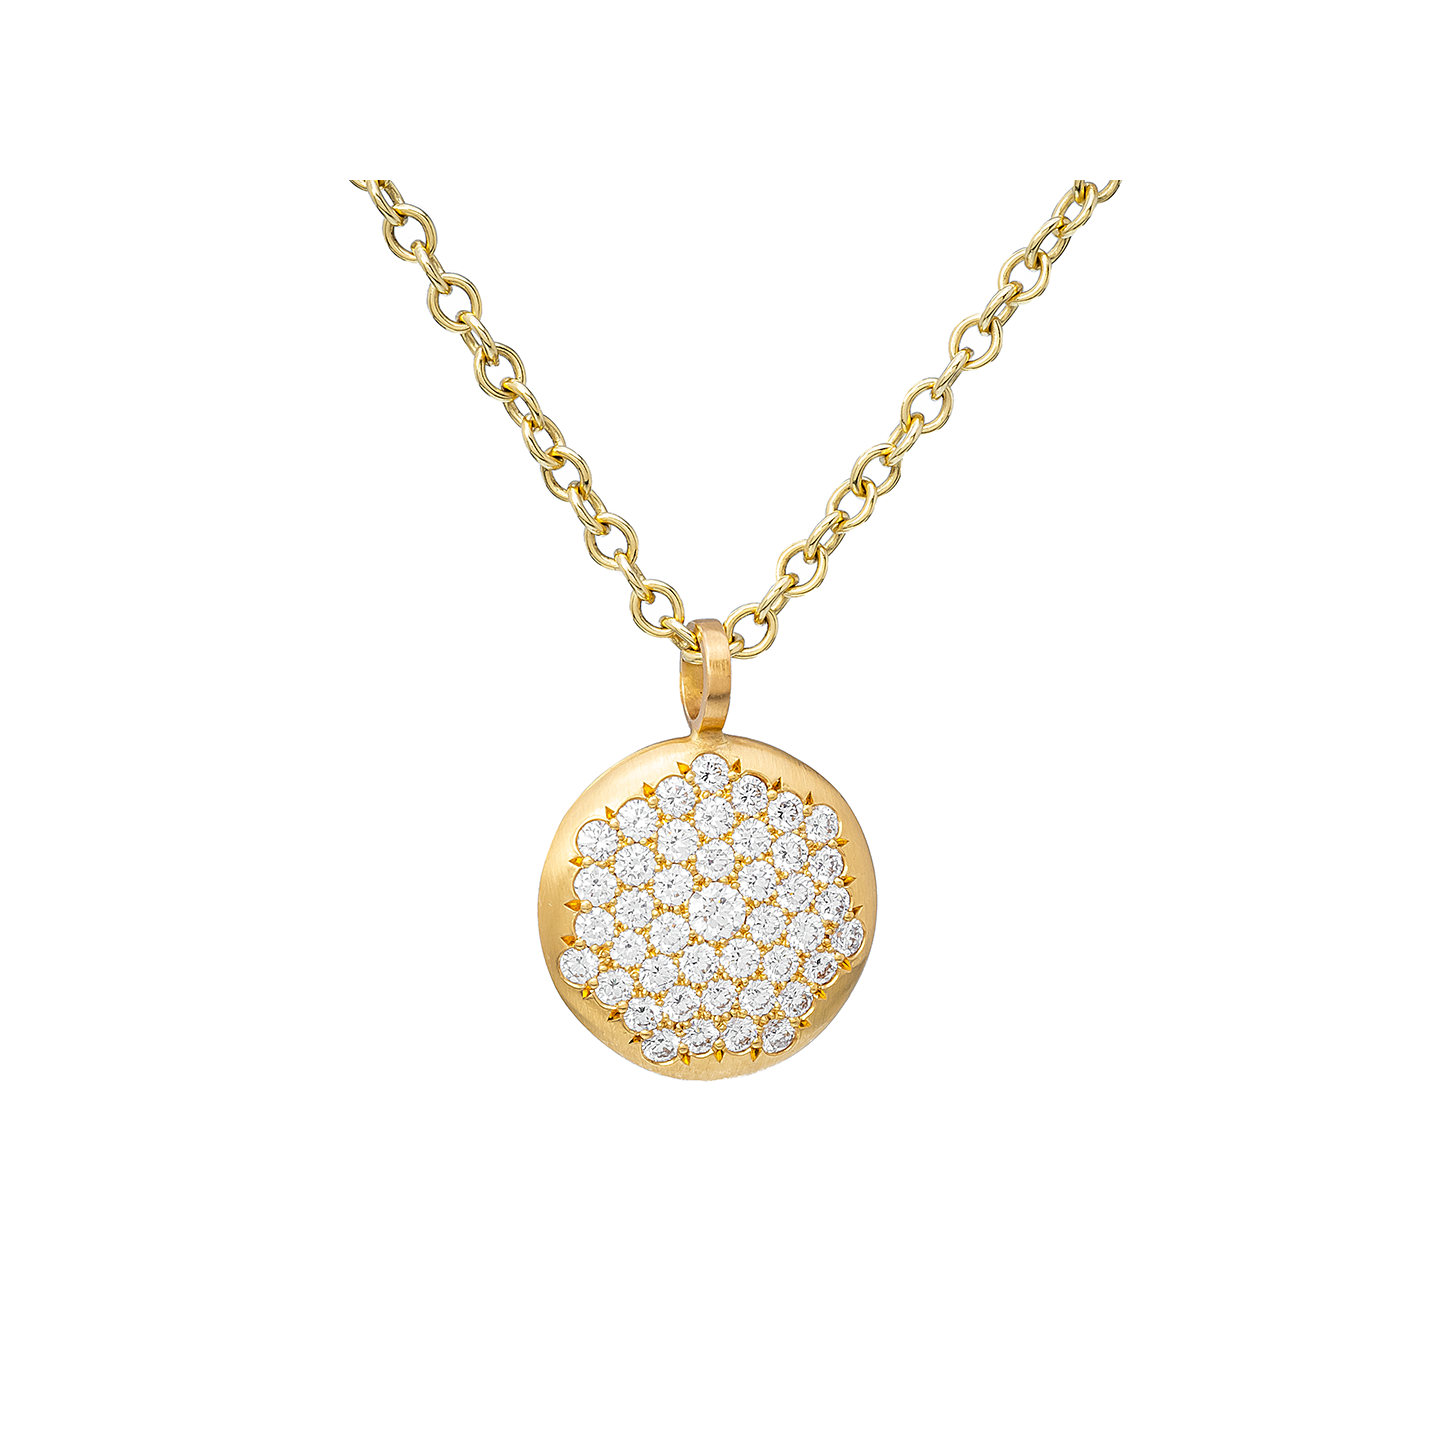 Caroline Ellen Large Diamond Pave Lentil Pendant Necklace